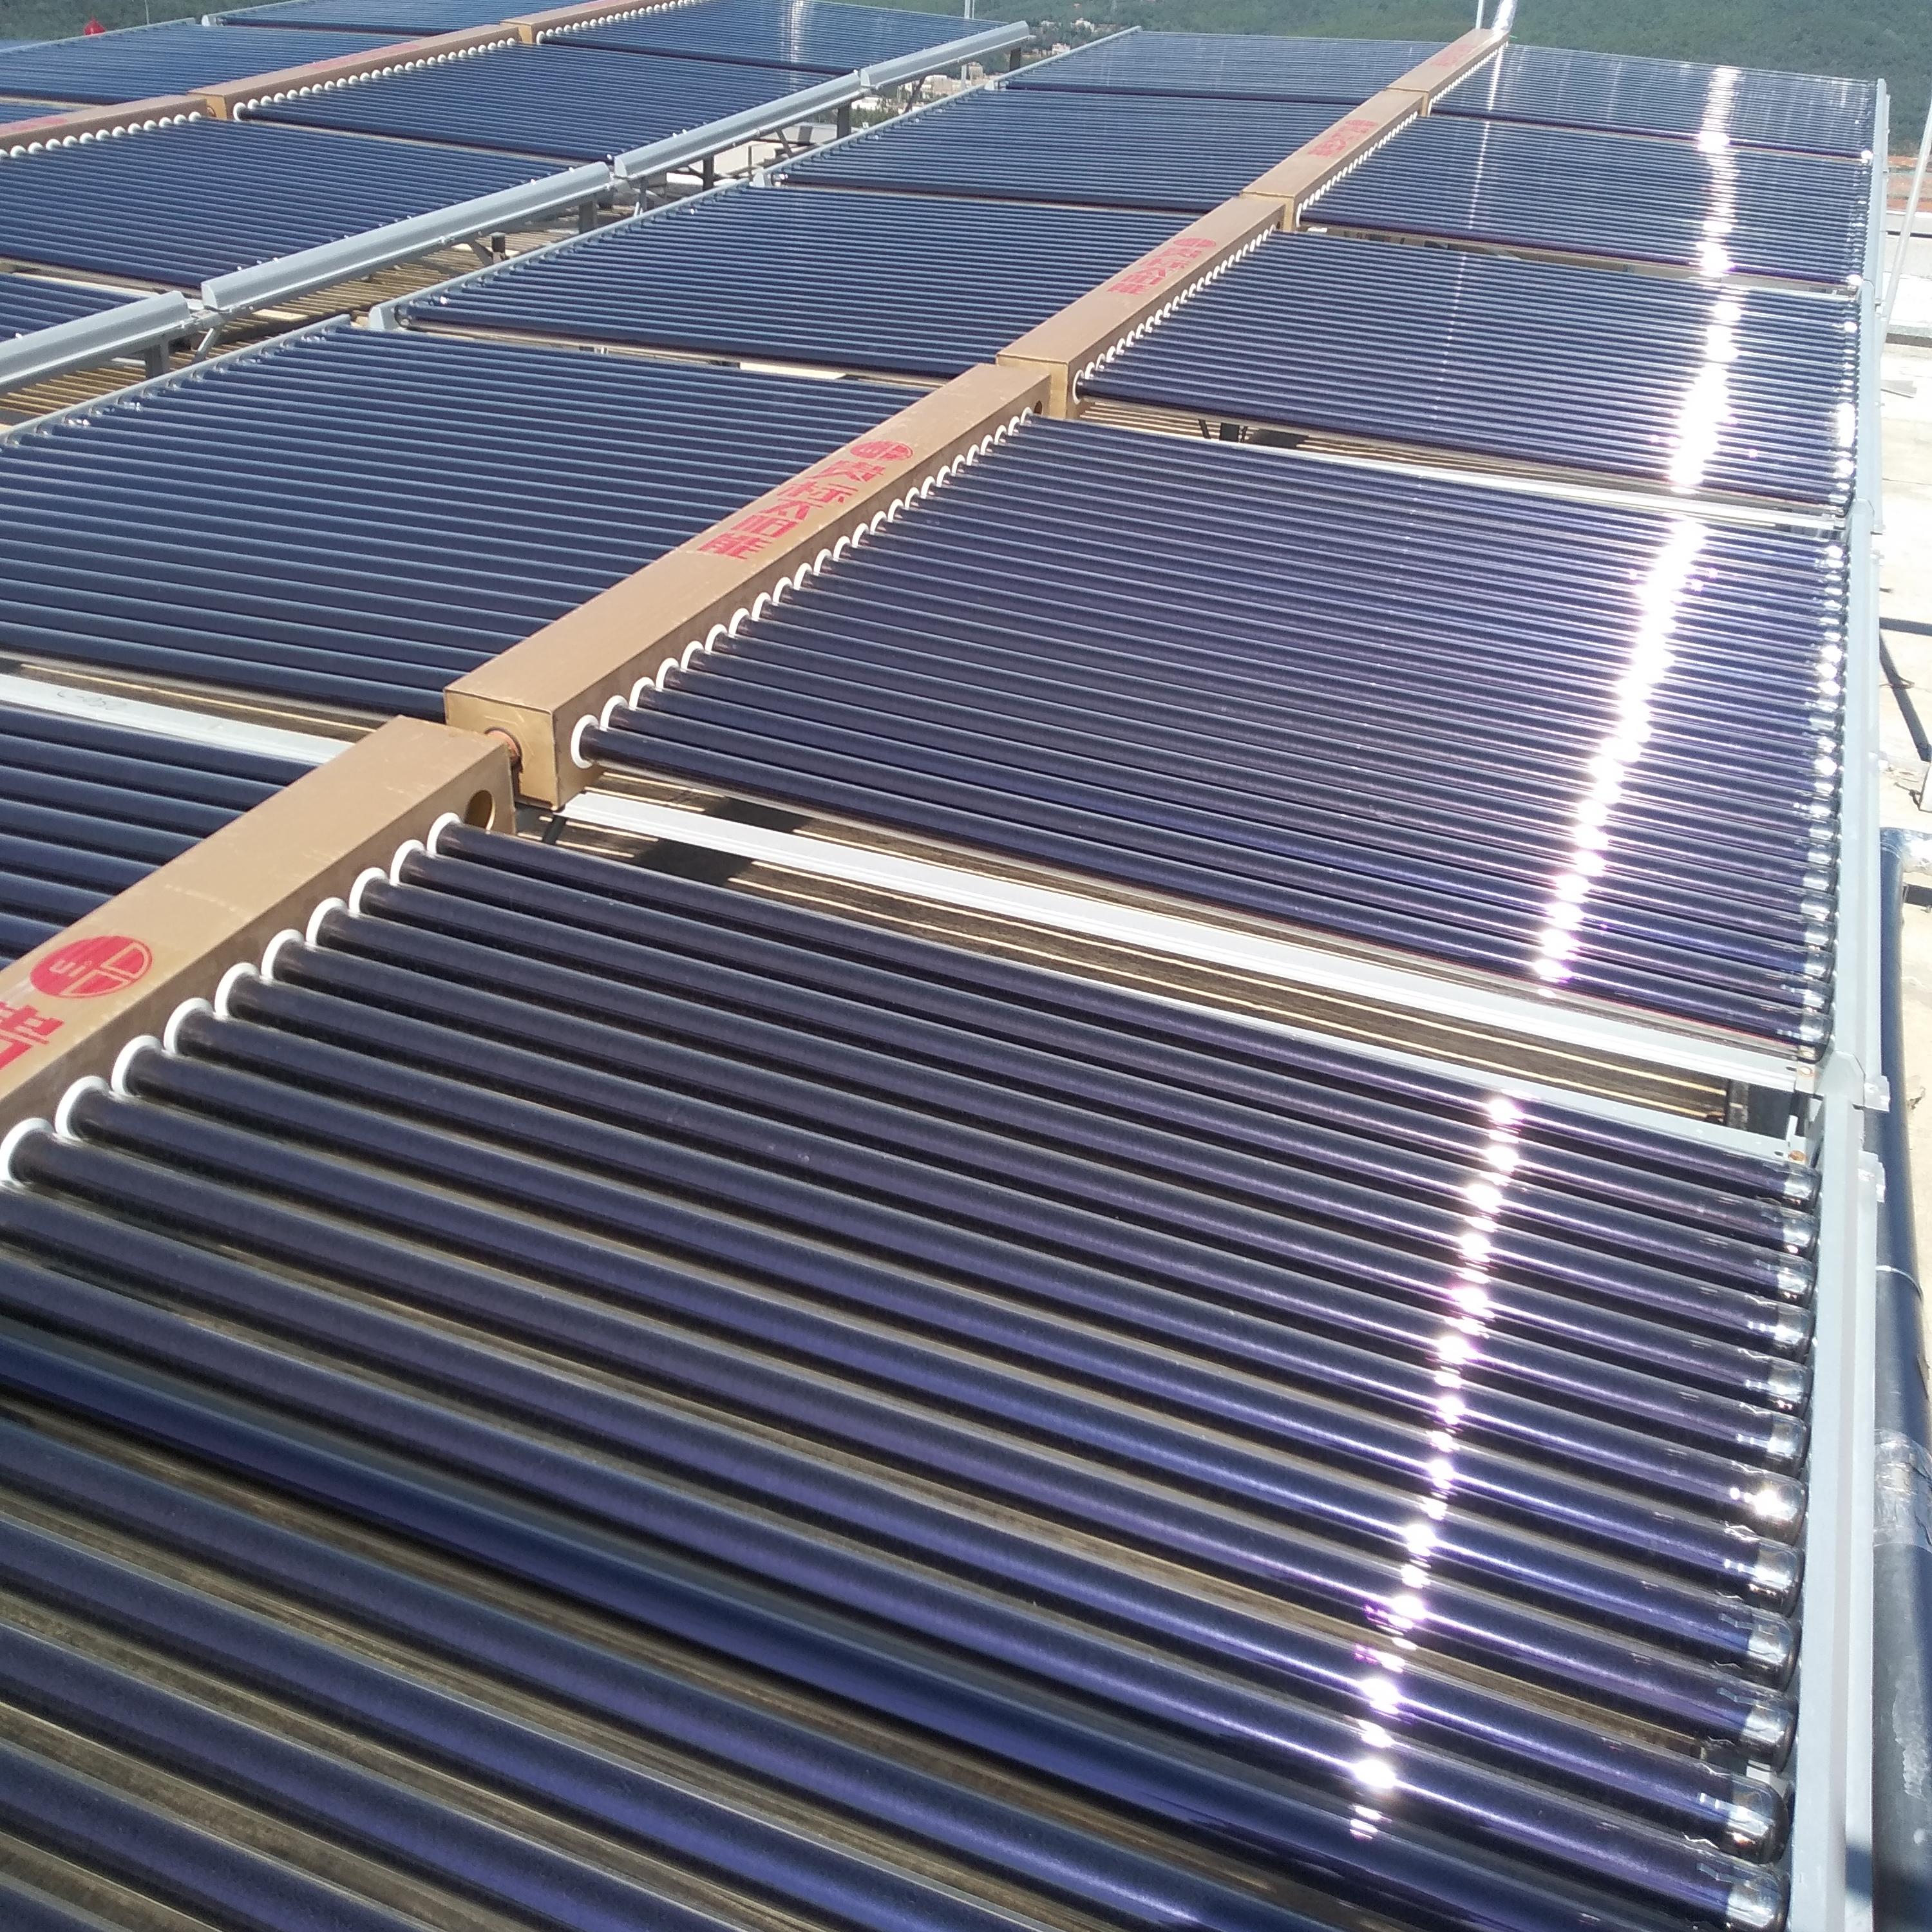 熱烈祝賀貴標能源集團成功簽約晉寧縣雙河中學太陽能集中供熱熱水工程項目